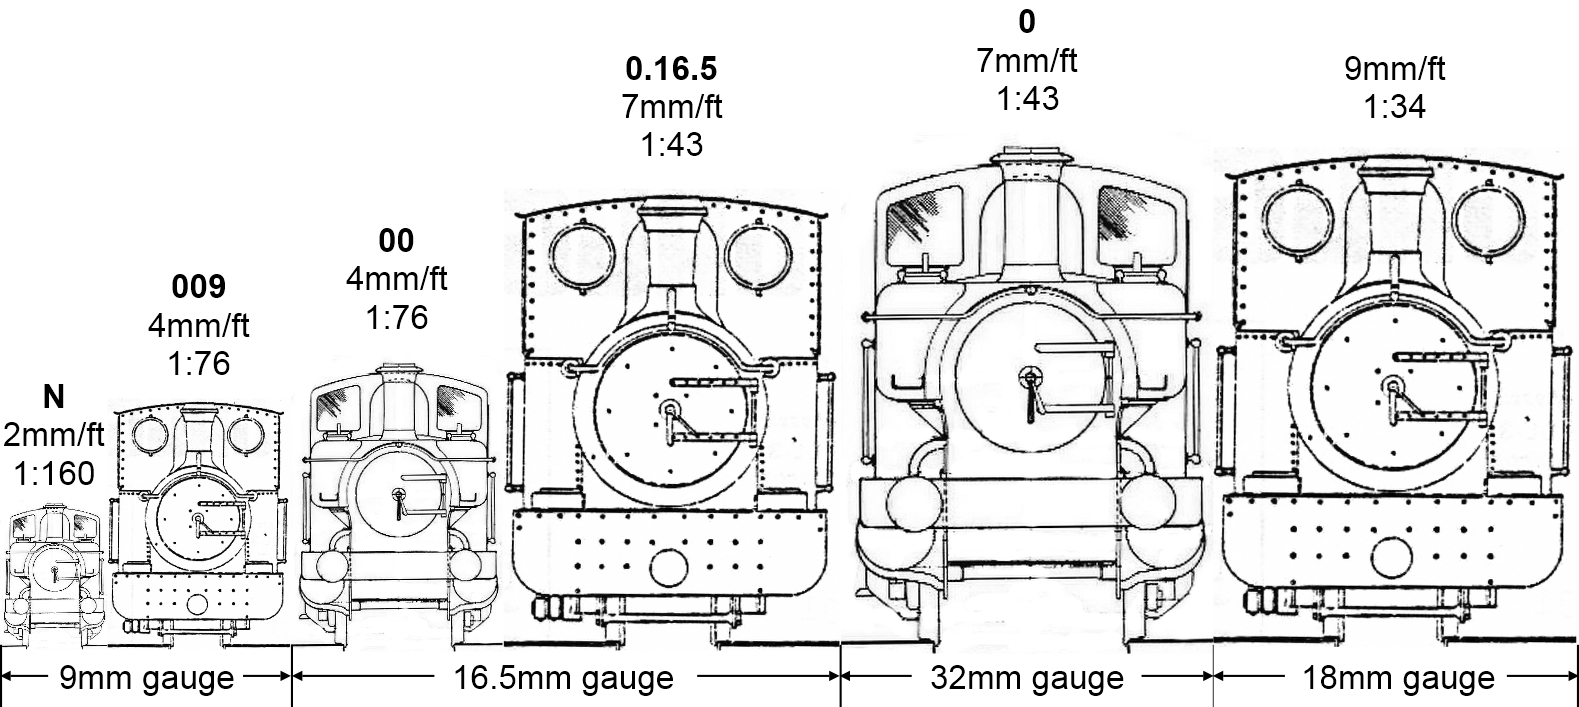 009 gauge track